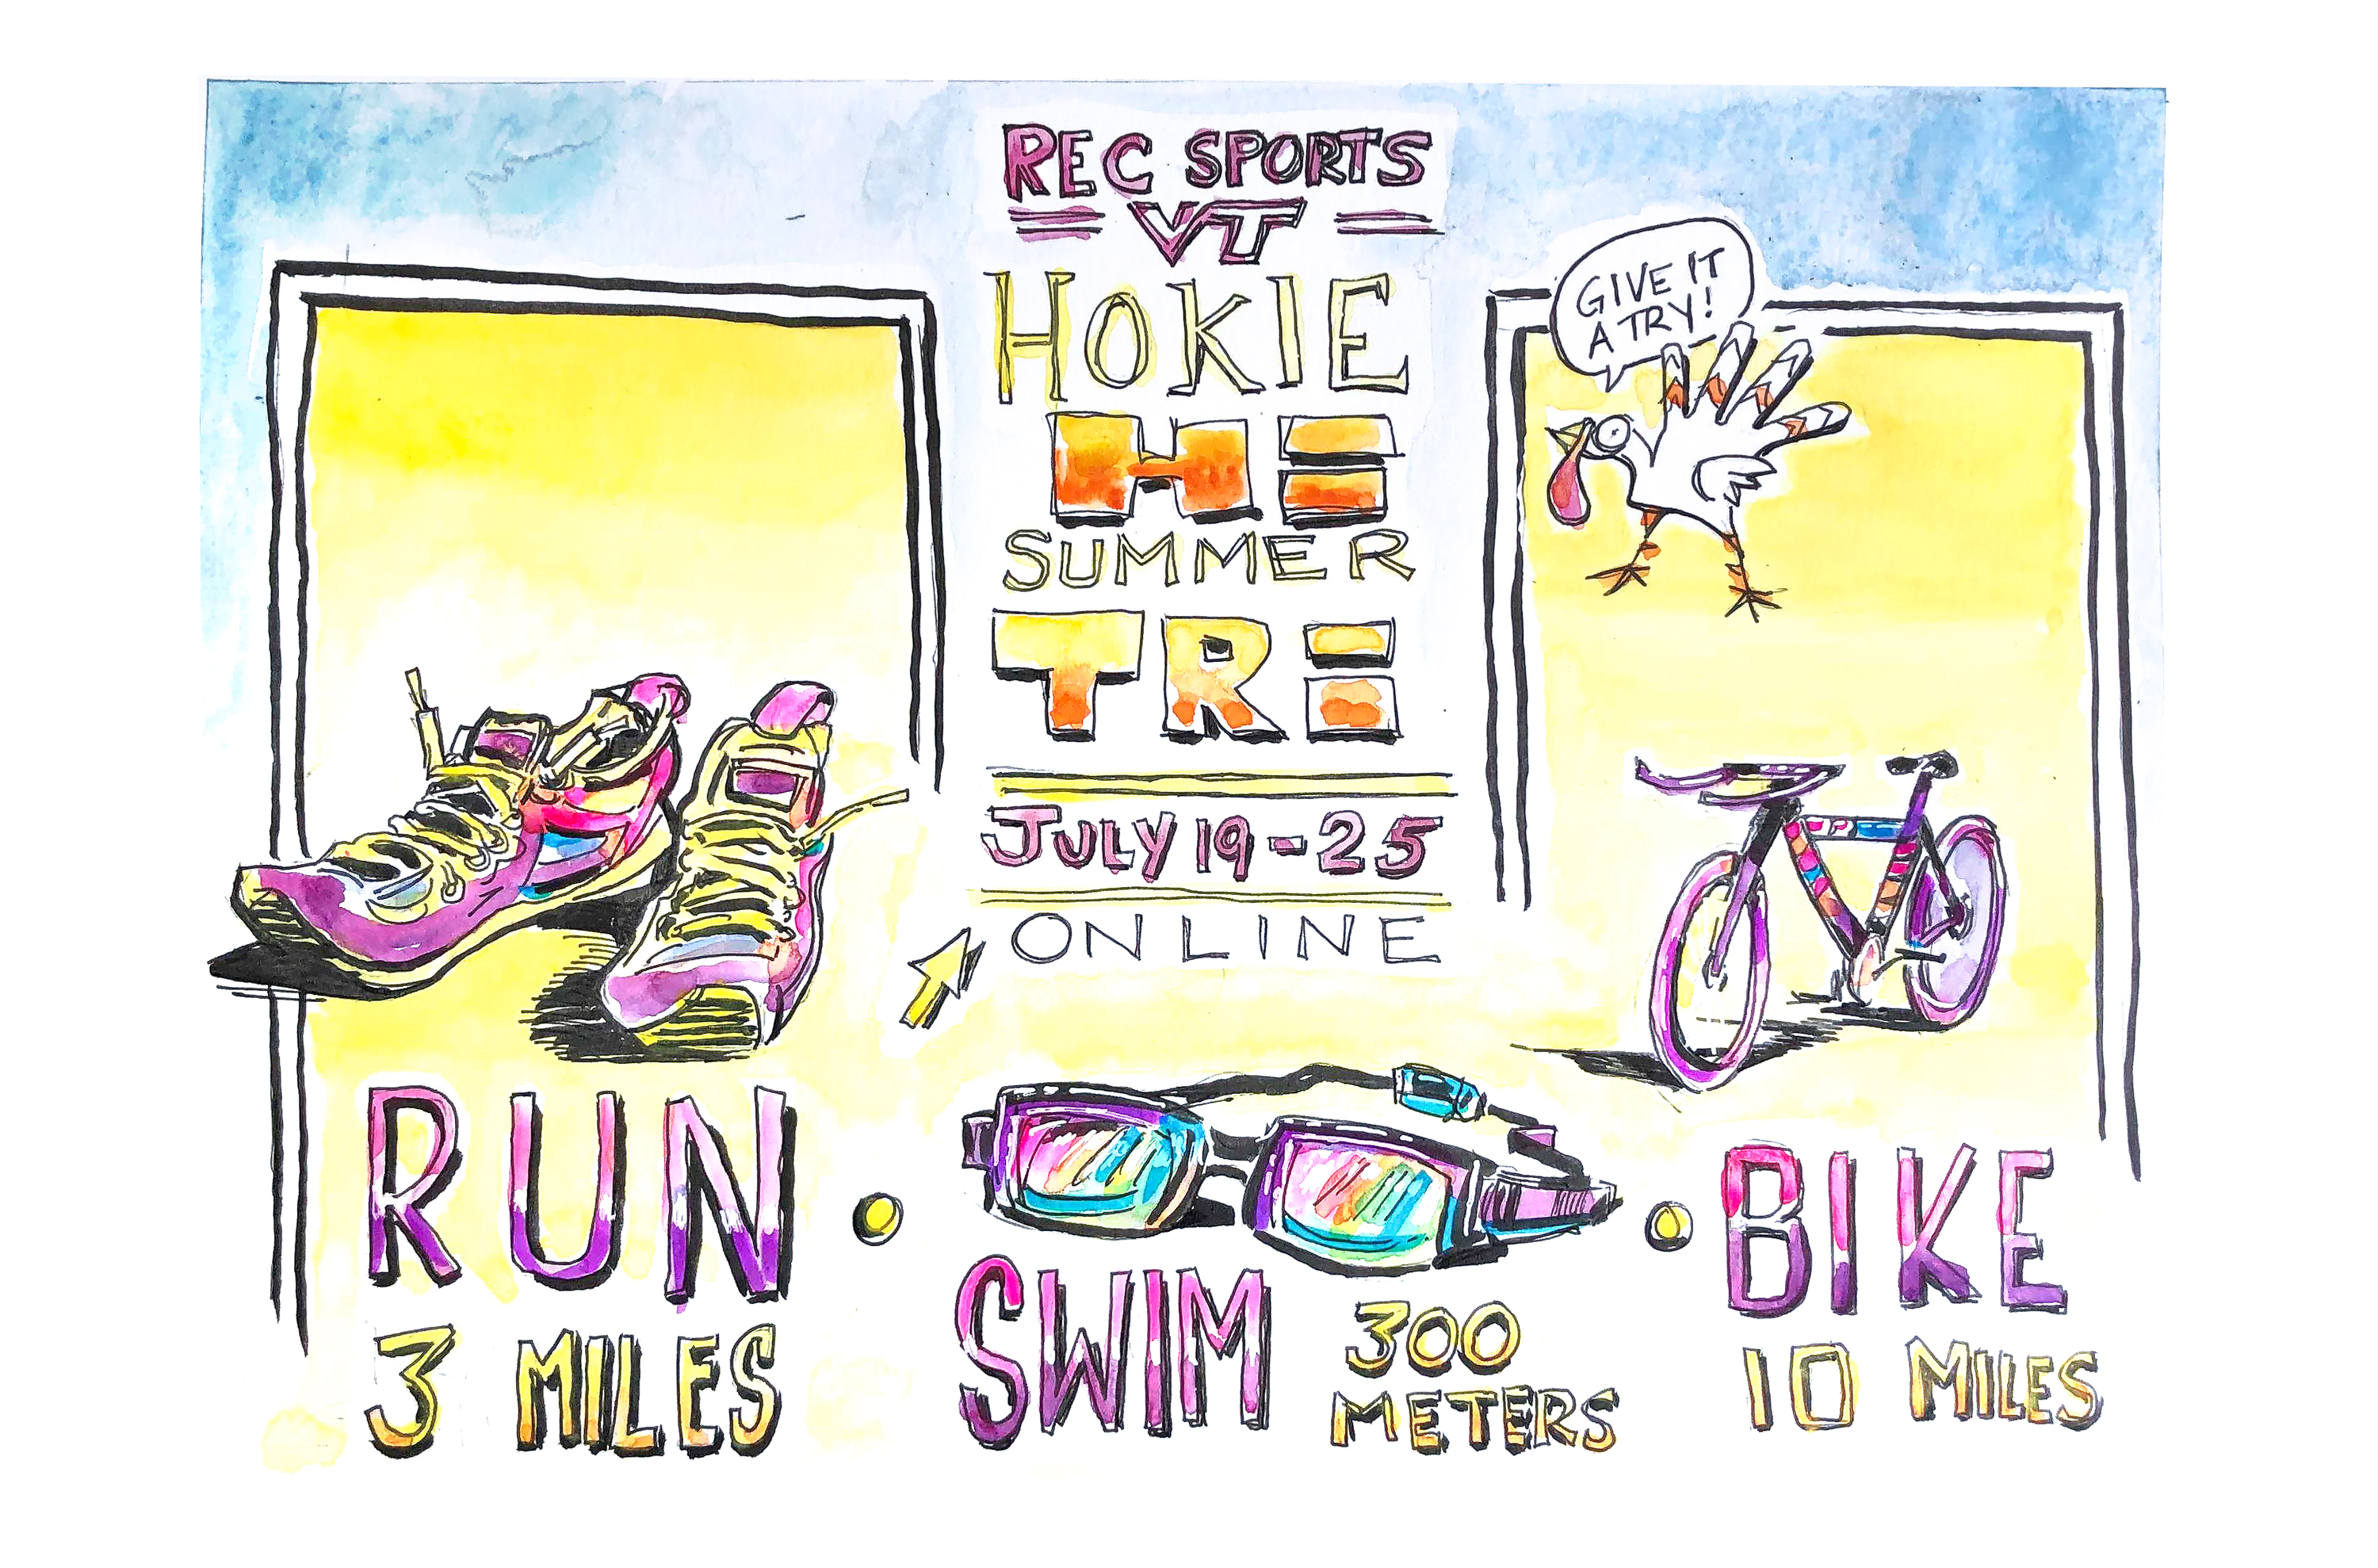 Illustration promoting rec sports summer triathlon July 19 - 25